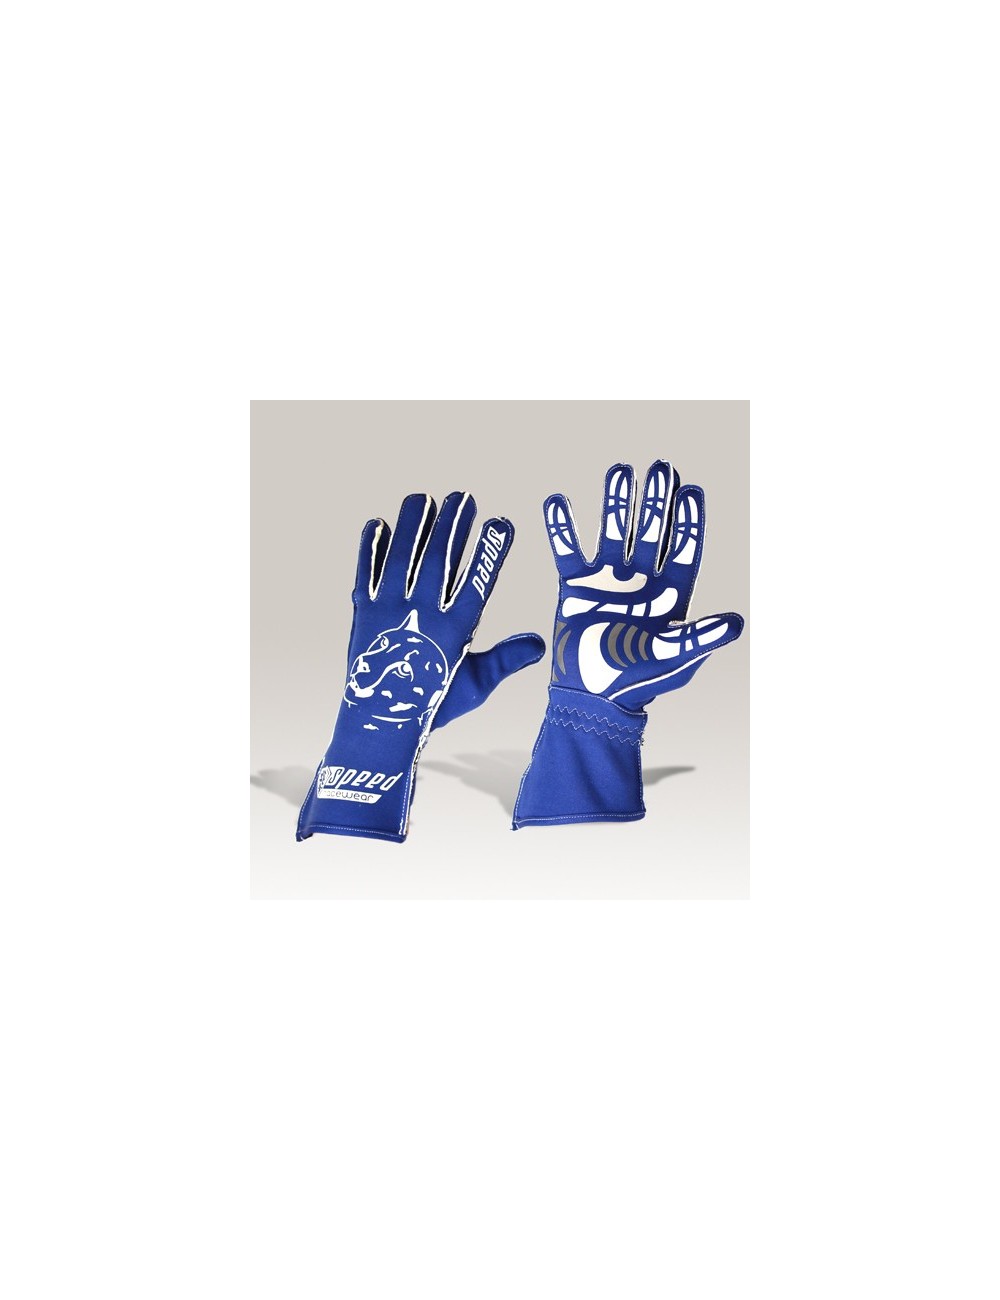 Speed gloves  Melbourne G-2  blue-white